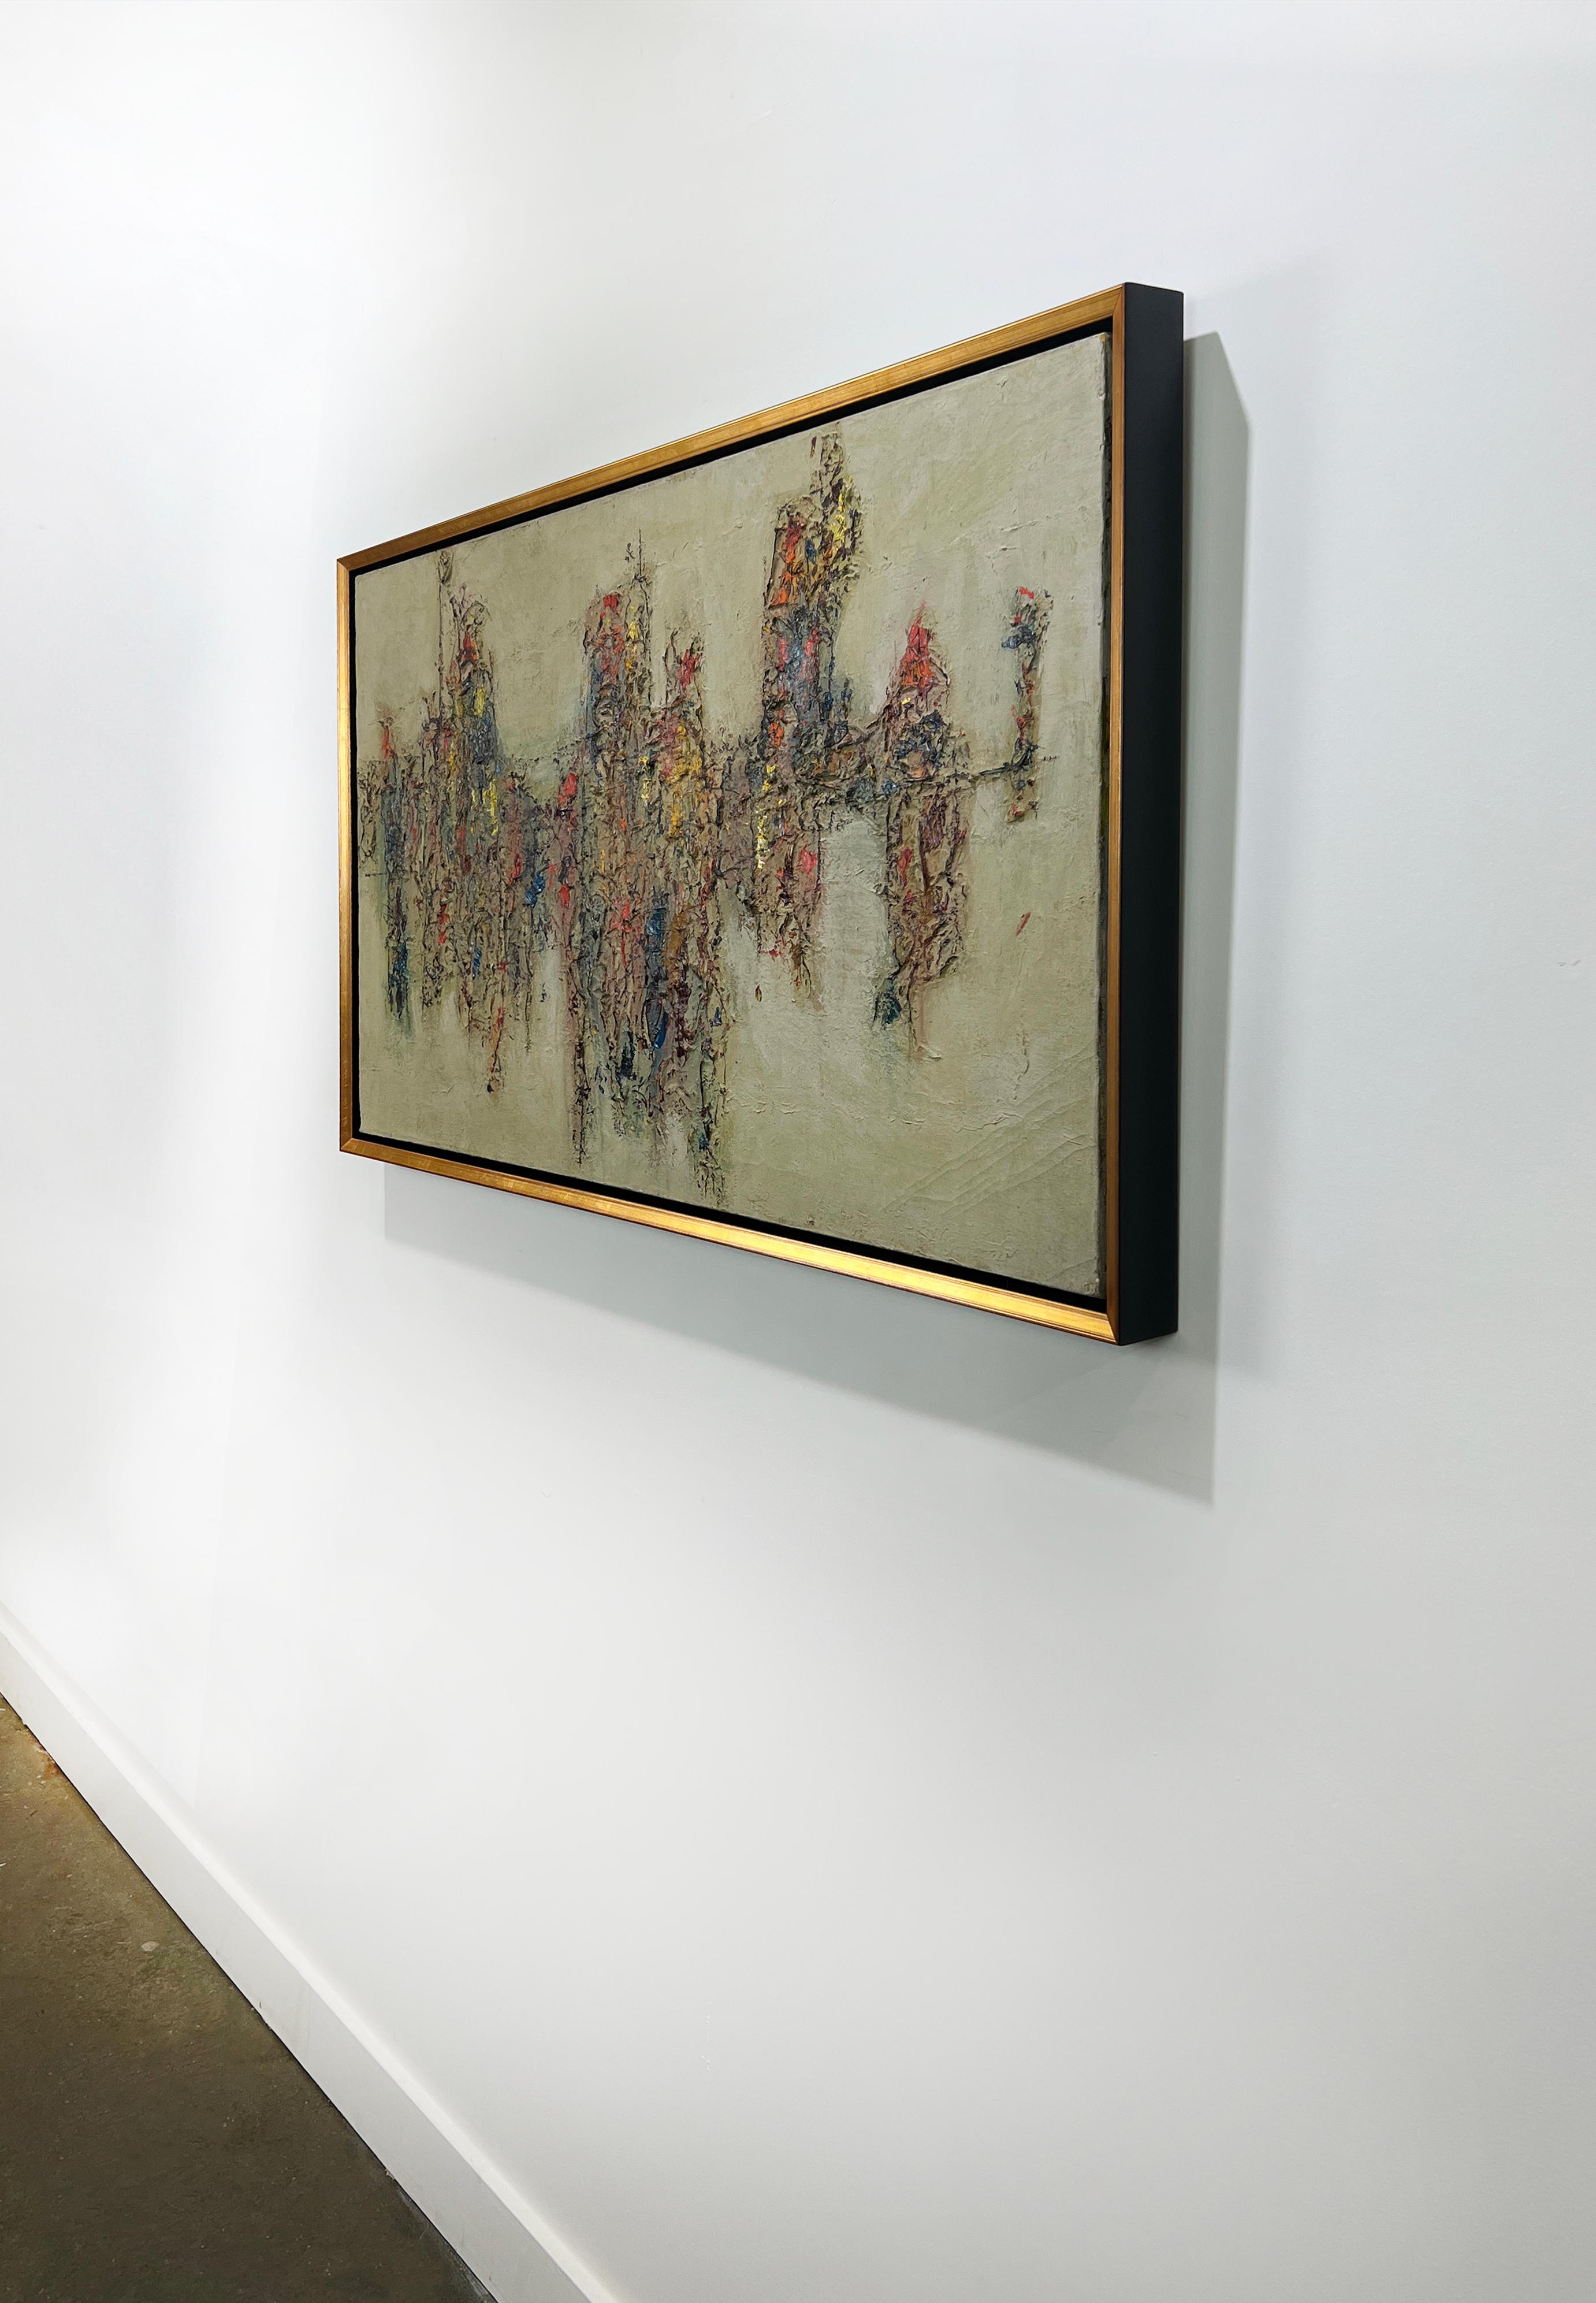 Cette peinture expressionniste abstraite moderne de Stanley Bate est réalisée avec de la peinture à l'huile sur toile. Il présente une palette de couleurs sourdes et terreuses avec des accents contrastés de jaune chaud, d'orange et de rouge. Le